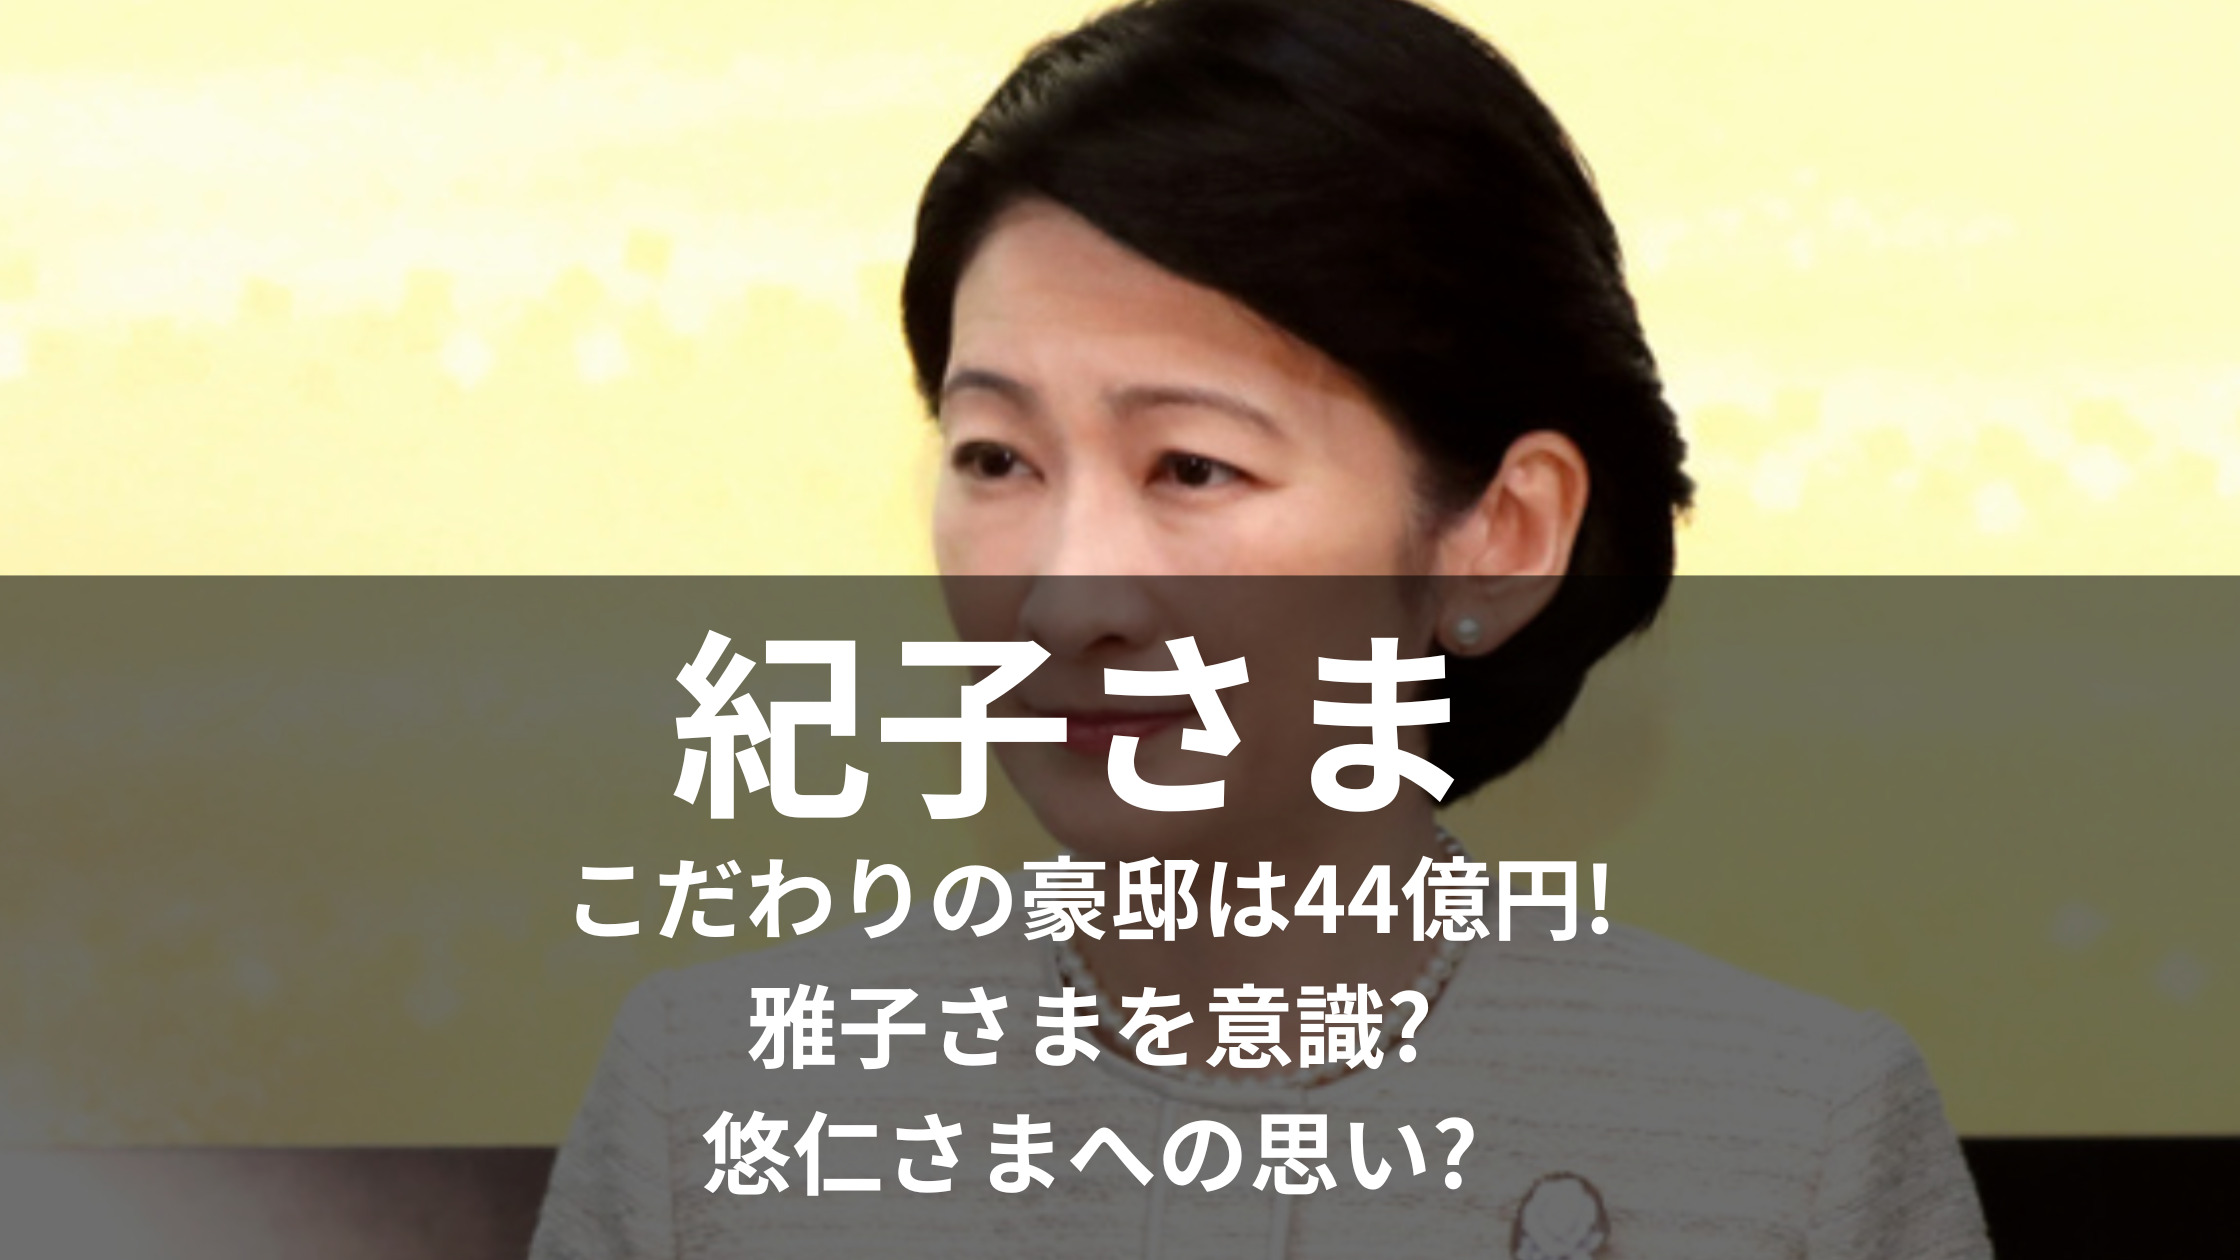 紀子さまこだわりの豪邸は44億円!雅子さまを意識?悠仁さまへの思い?